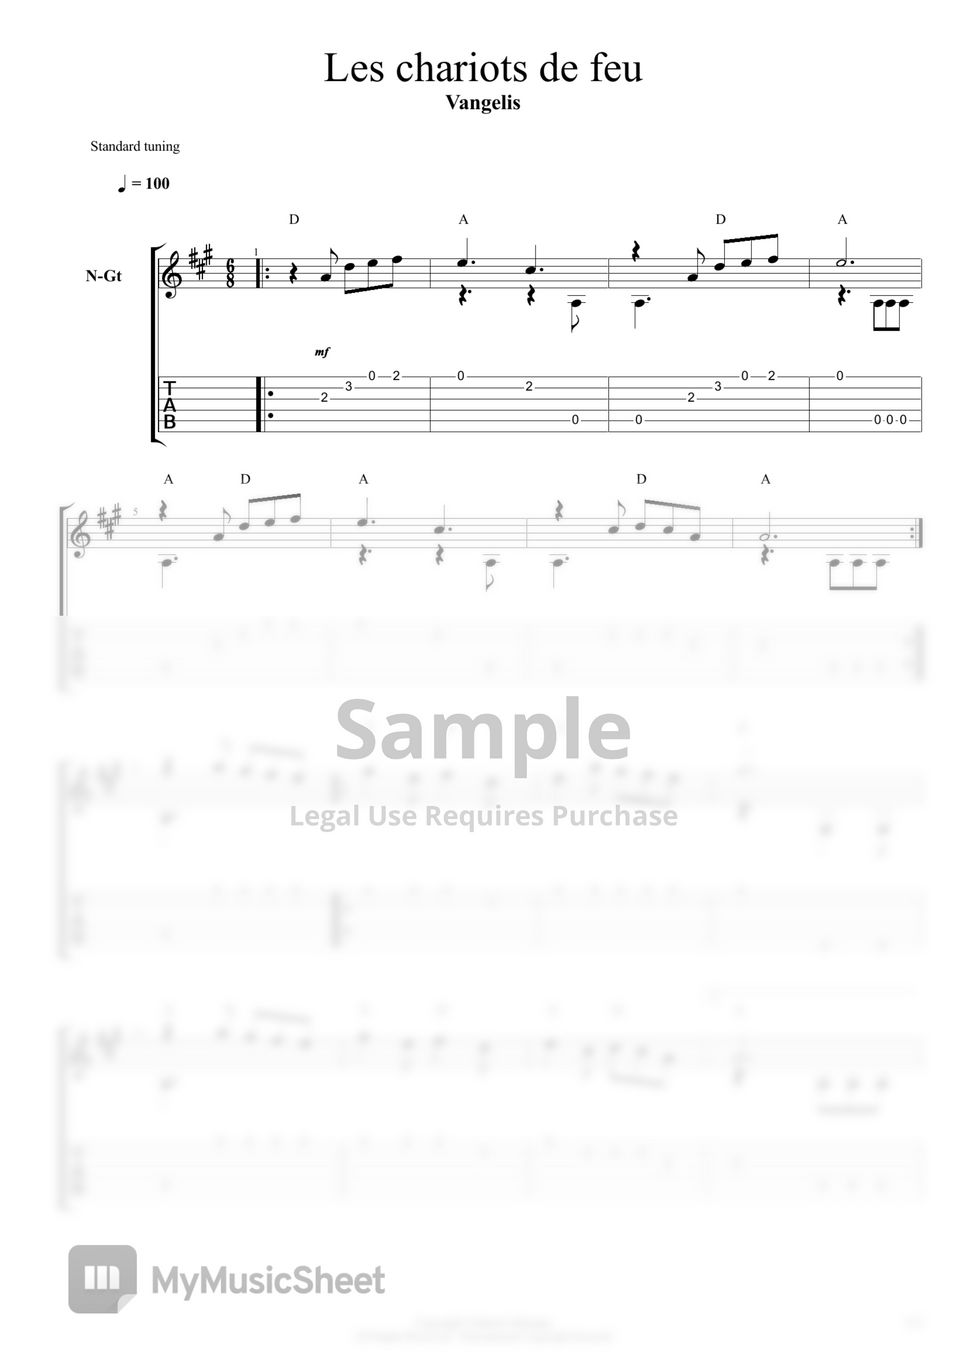 Vangelis - Les chariots de feu by Mélodie pour guitare en tablature et notes de musique + Accords